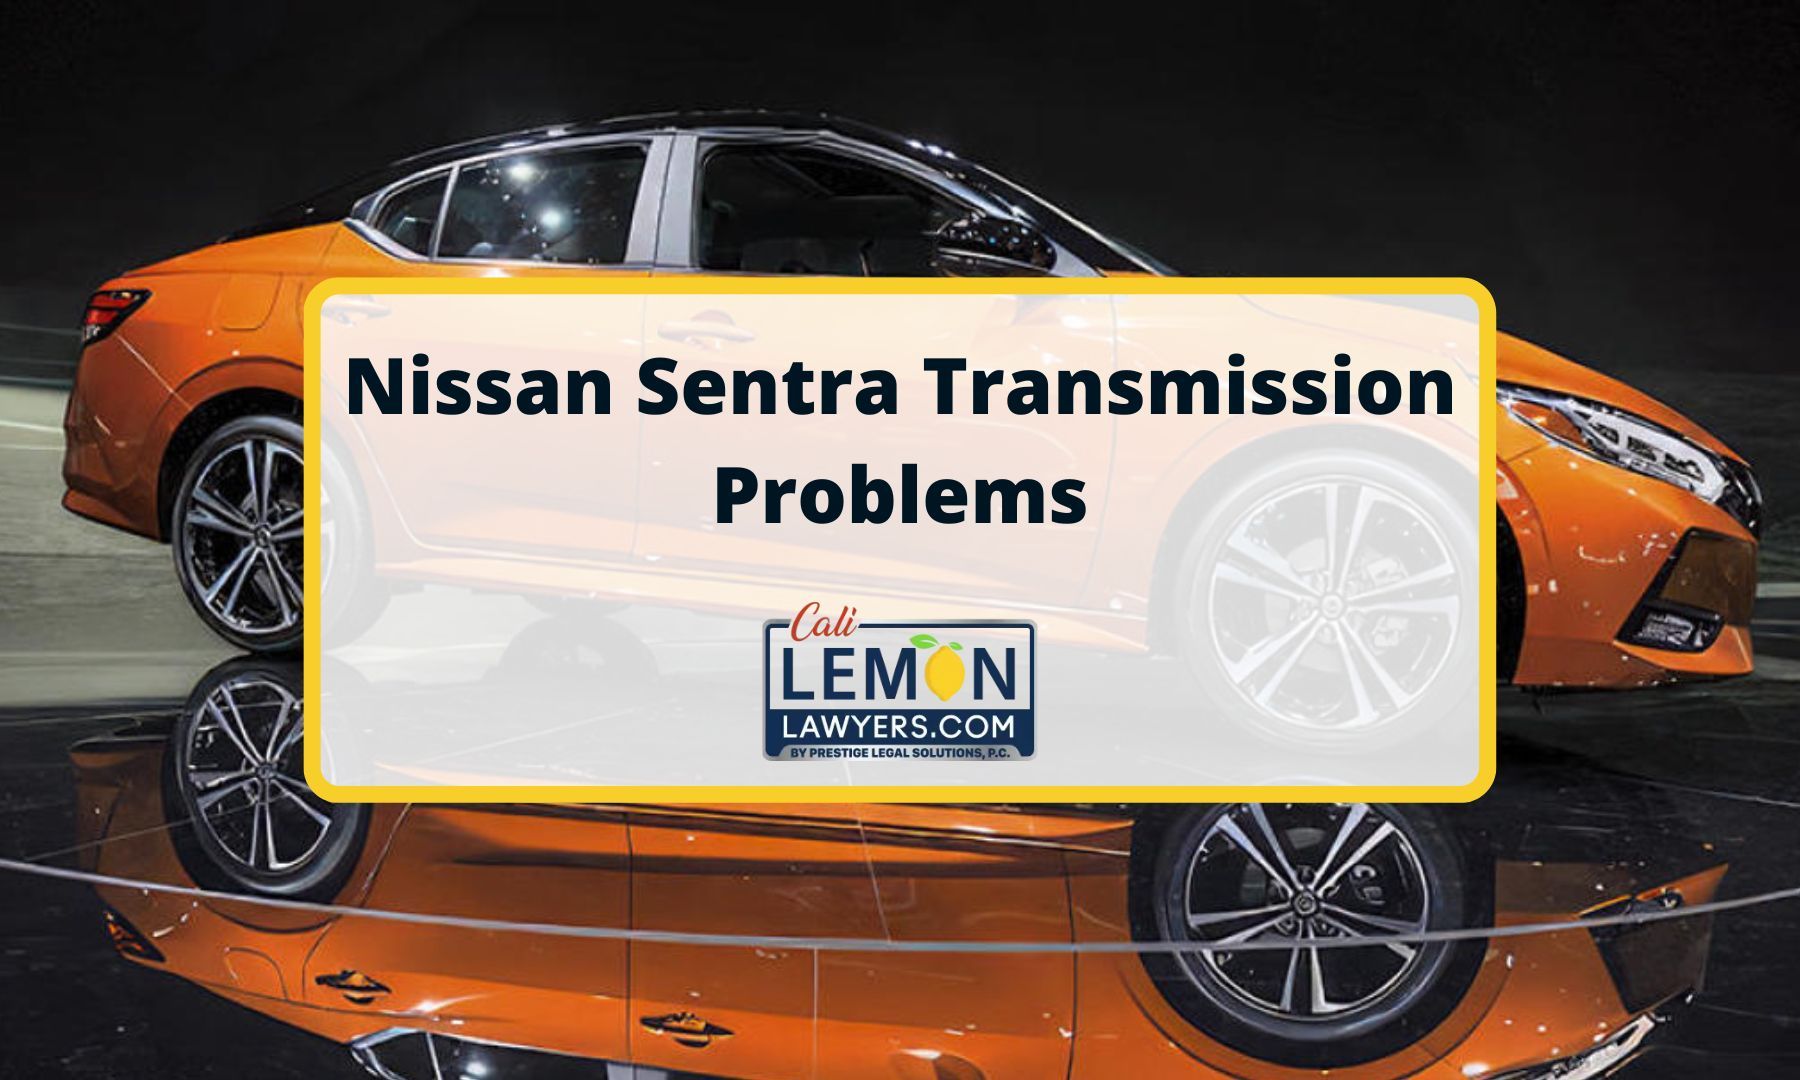 Nissan Sentra Transmission Problems